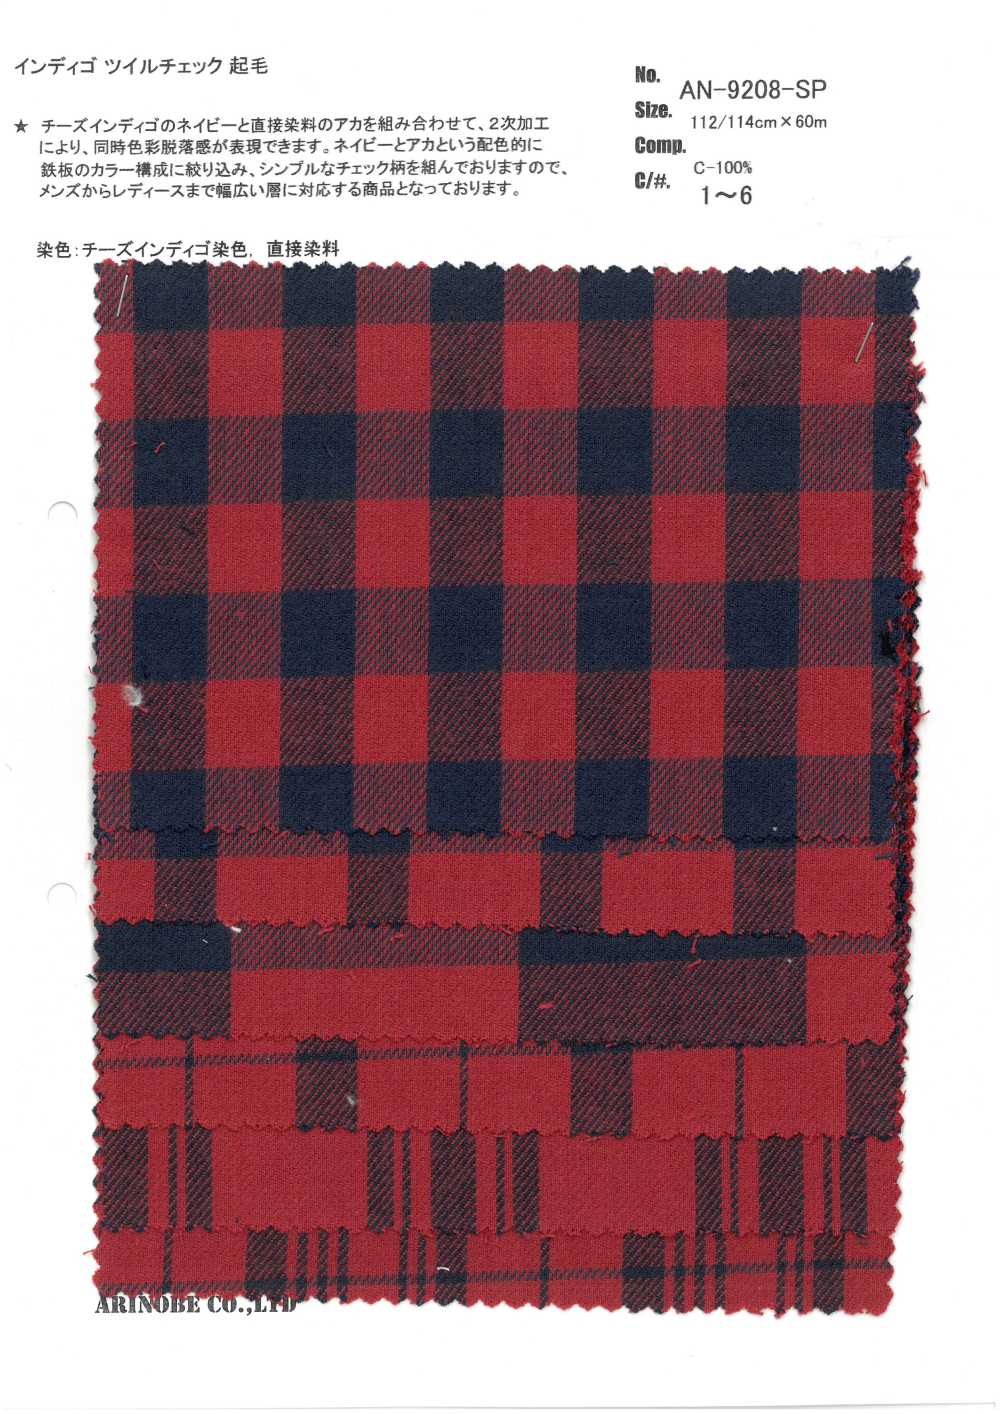 AN-9208SP Indigo Twill Check (Fuzzy)[Têxtil / Tecido] ARINOBE CO., LTD.